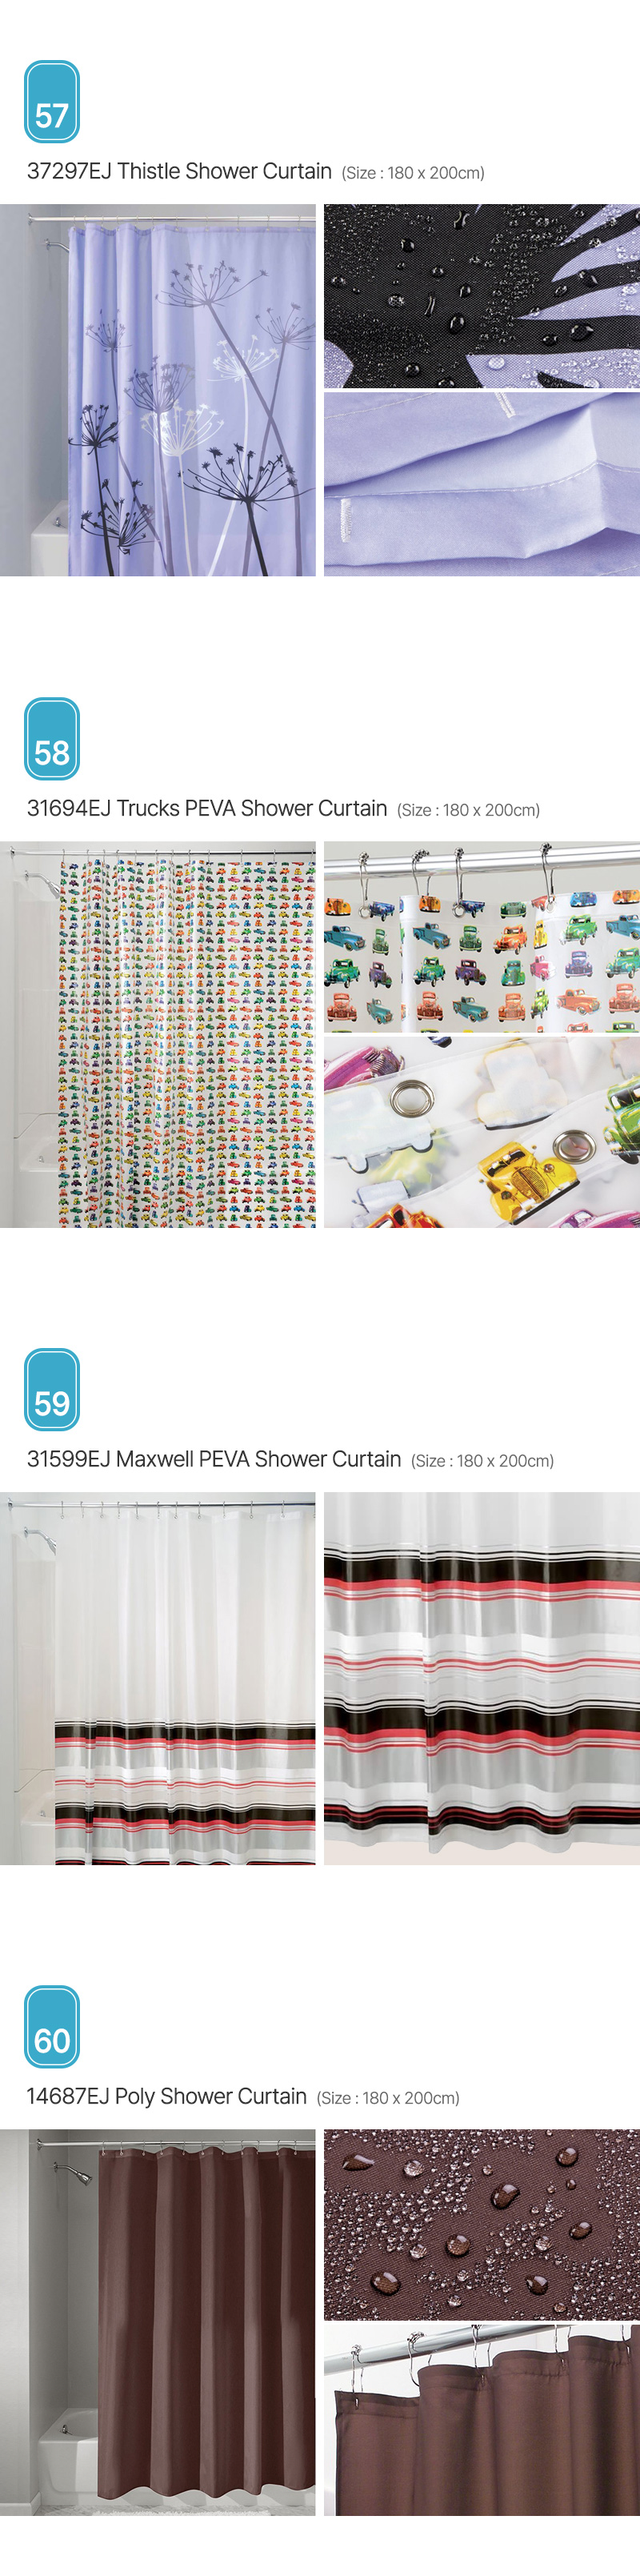 Aria_Shower-Curtain_15.jpg